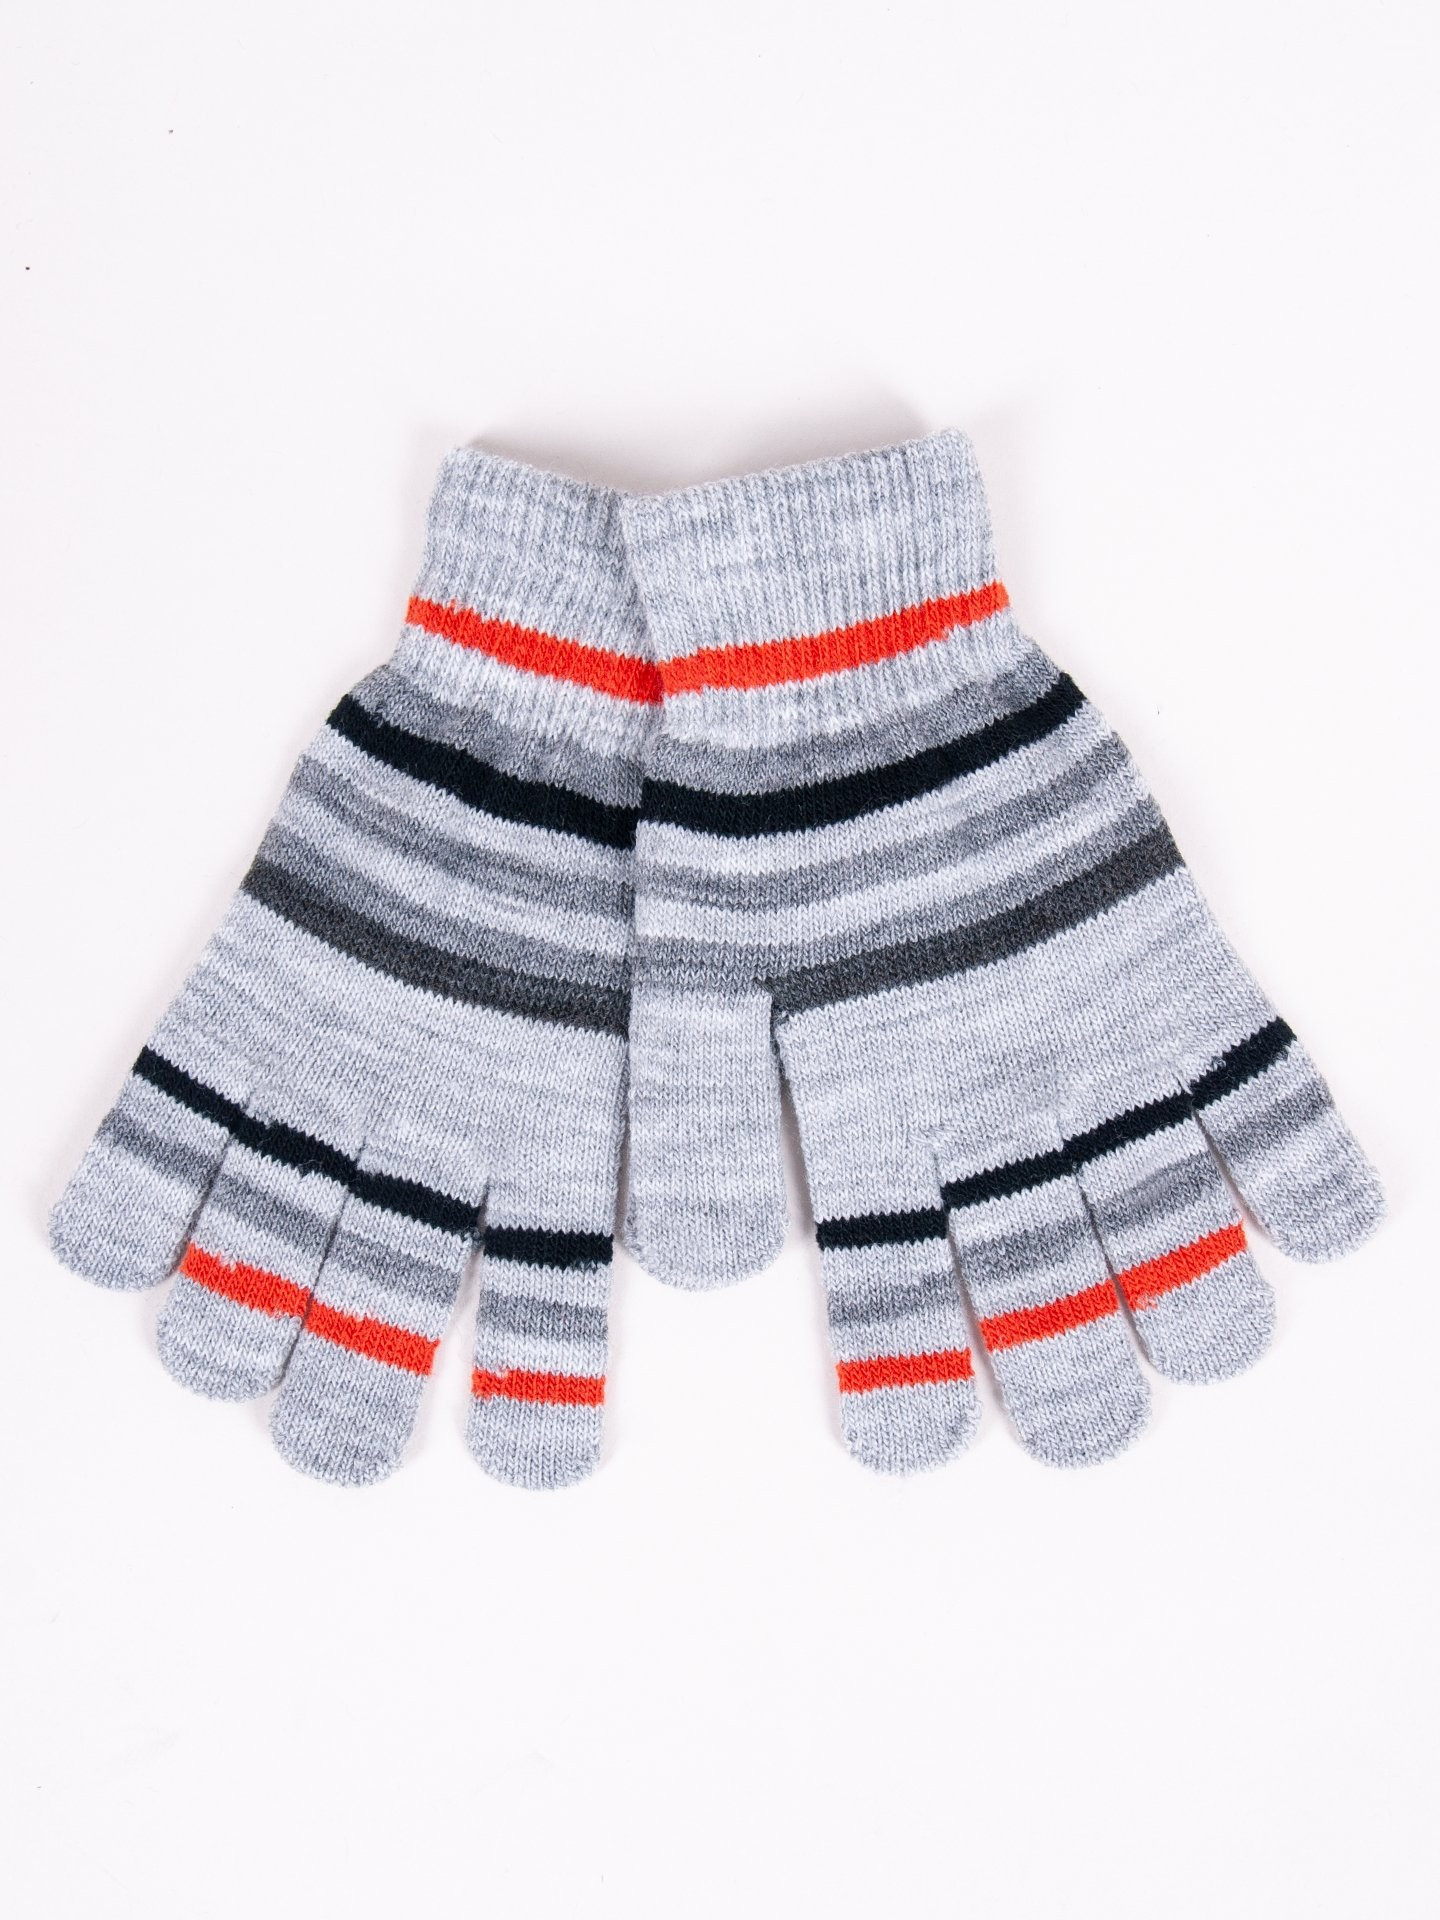 Chlapecké pětiprsté rukavice Yoclub RED-0118C-AA50-005 Grey 14